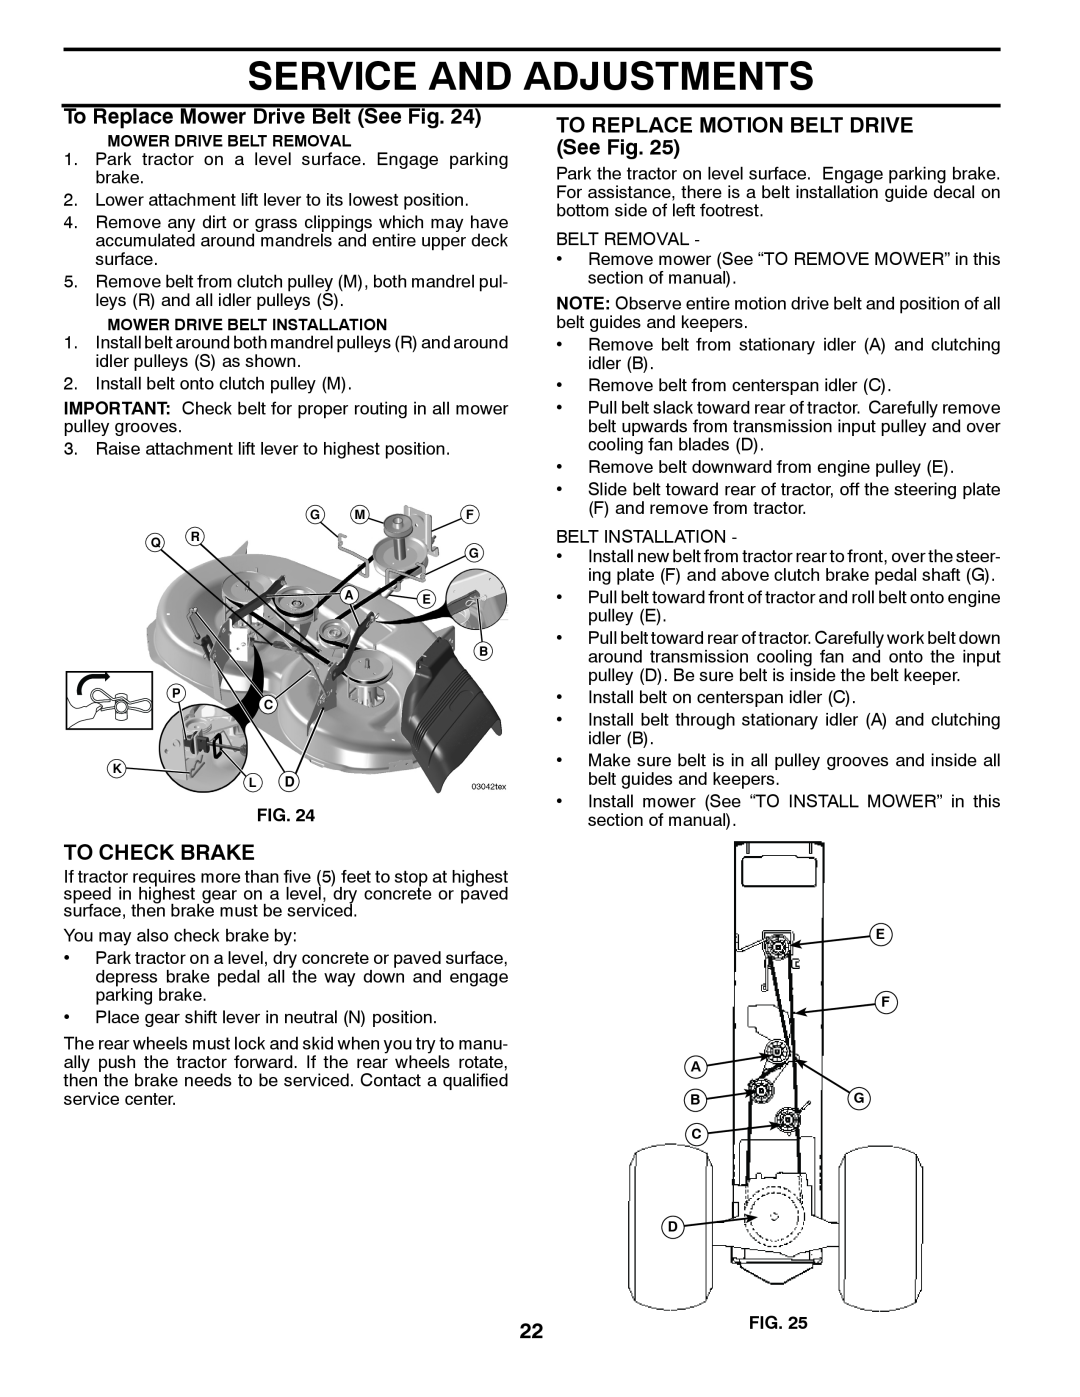 Poulan PB19542LT manual To Replace Mower Drive Belt See Fig, TO REPLACE MOTION BELT DRIVE See Fig, To Check Brake 